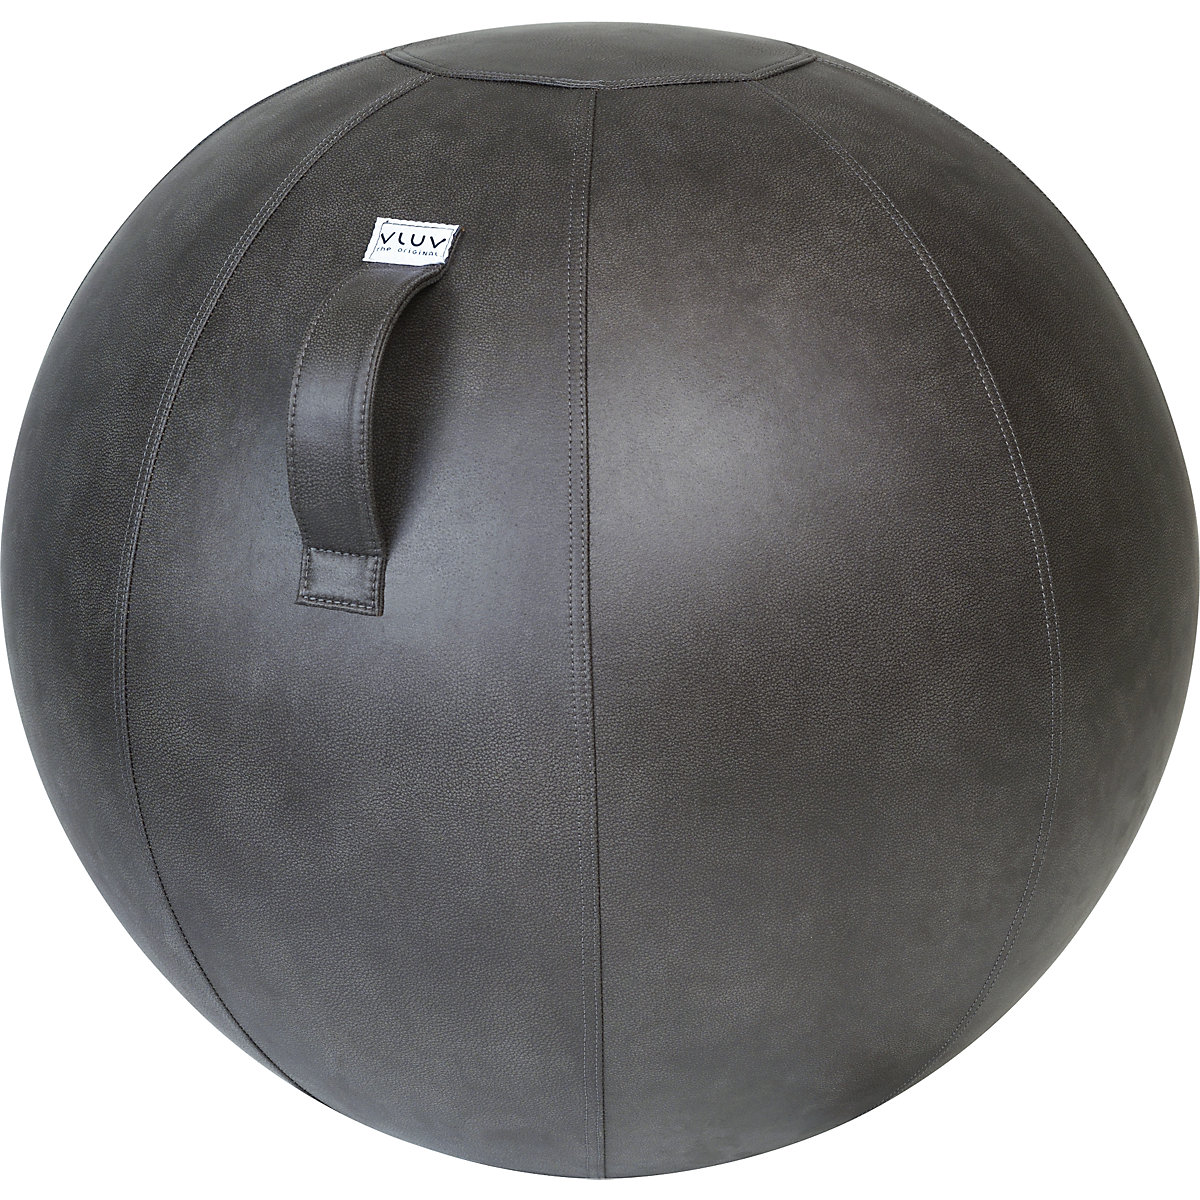 Lopta za sjedenje VEEL – VLUV, umjetna koža od mikrovlakana, 700 – 750 mm, u sivoj boji slona-7